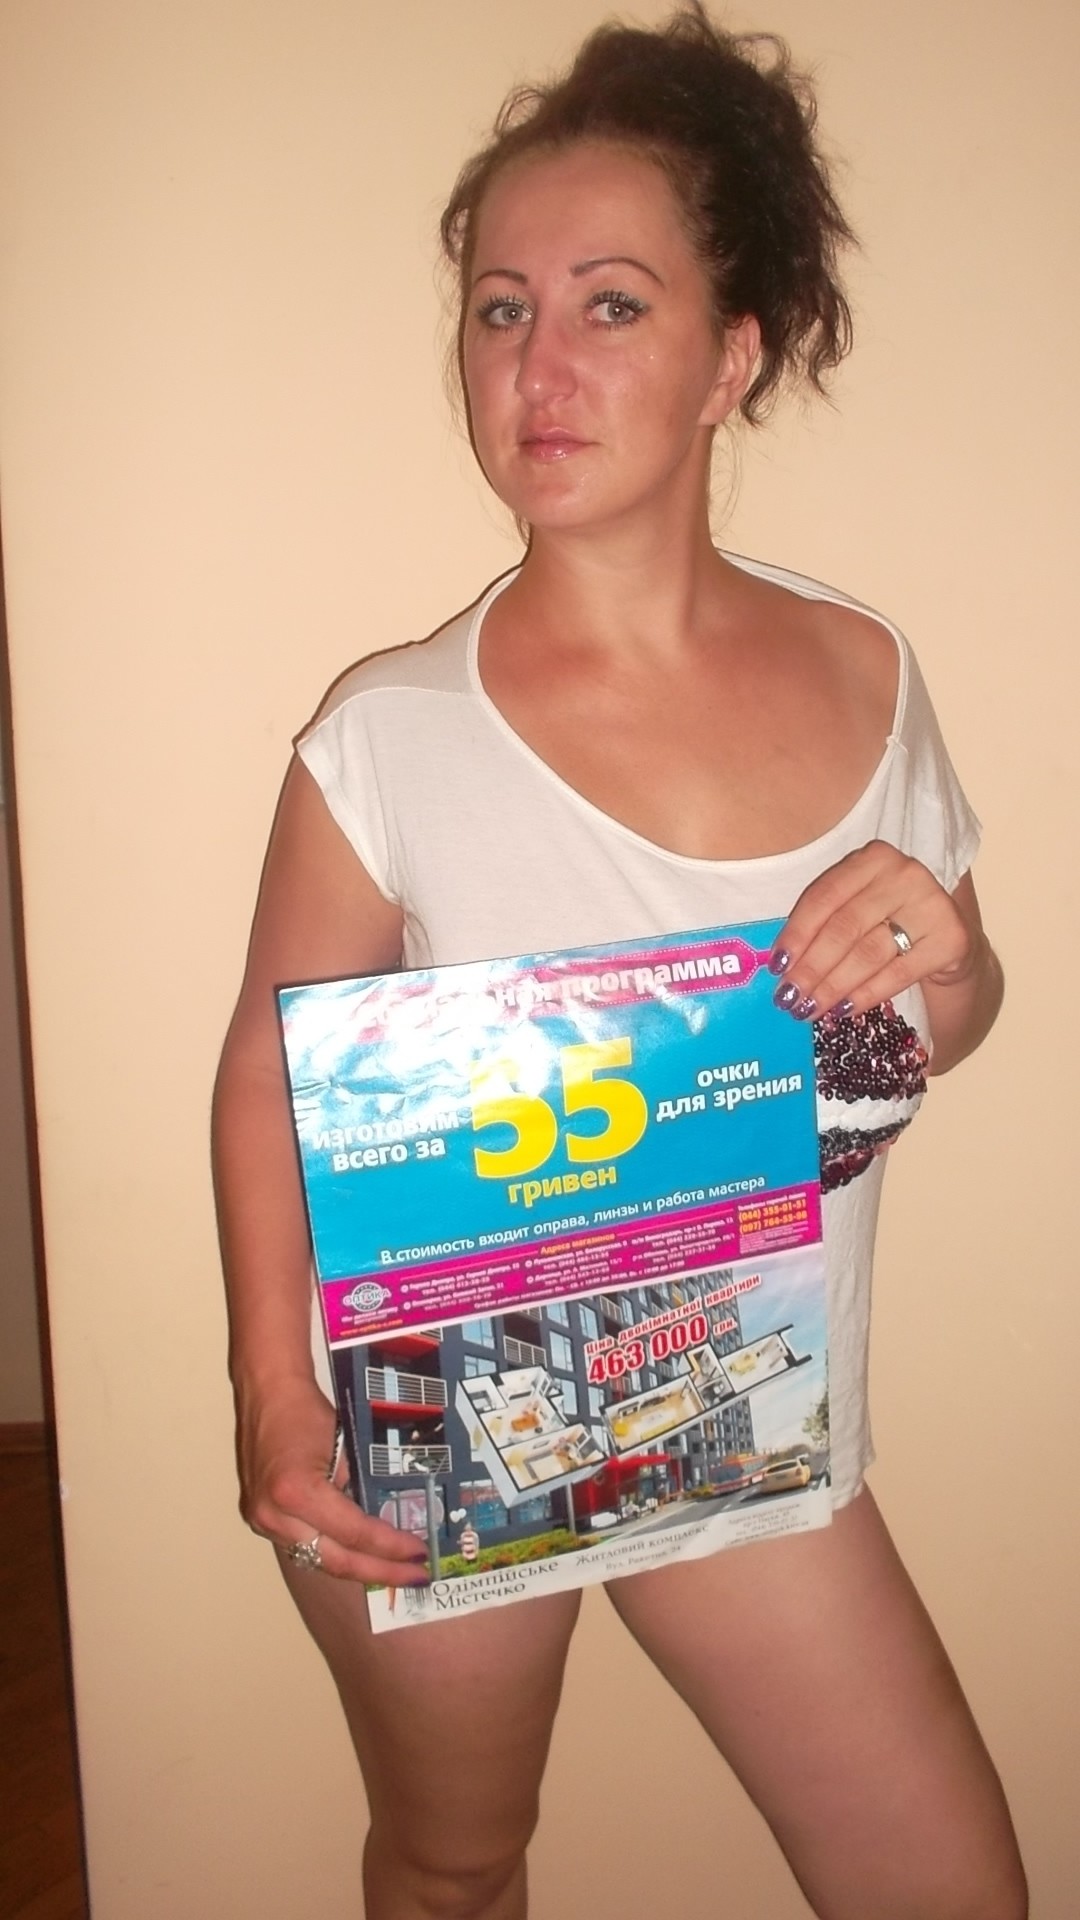 Проститутка Alesya, фото 8, тел: 0932956006. Dniprovskiy area - Киев